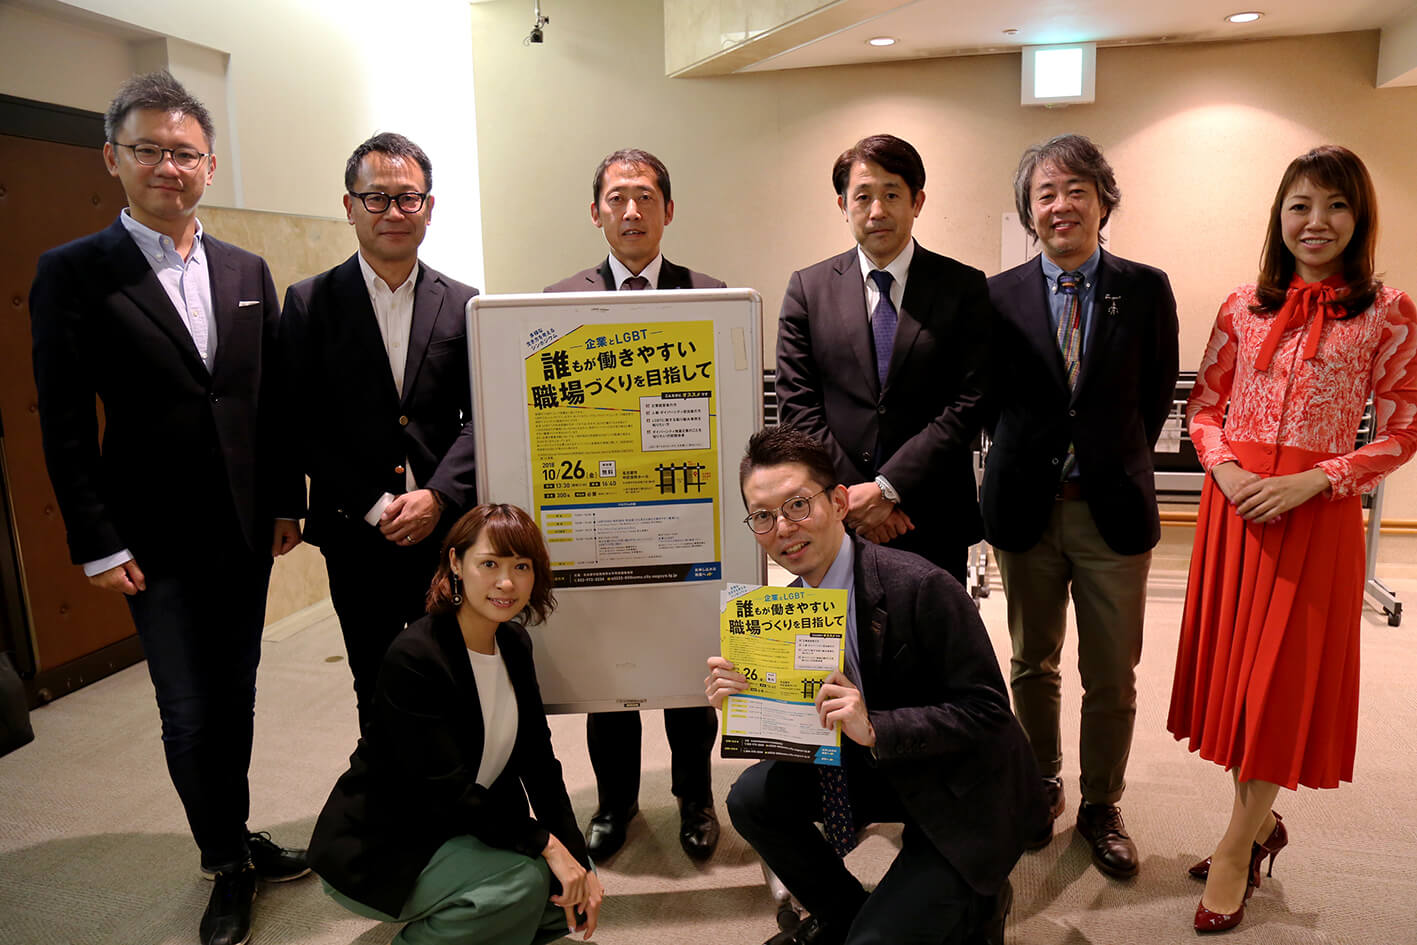 2018年名古屋市主催「多様な生き方を考えるシンポジウム」